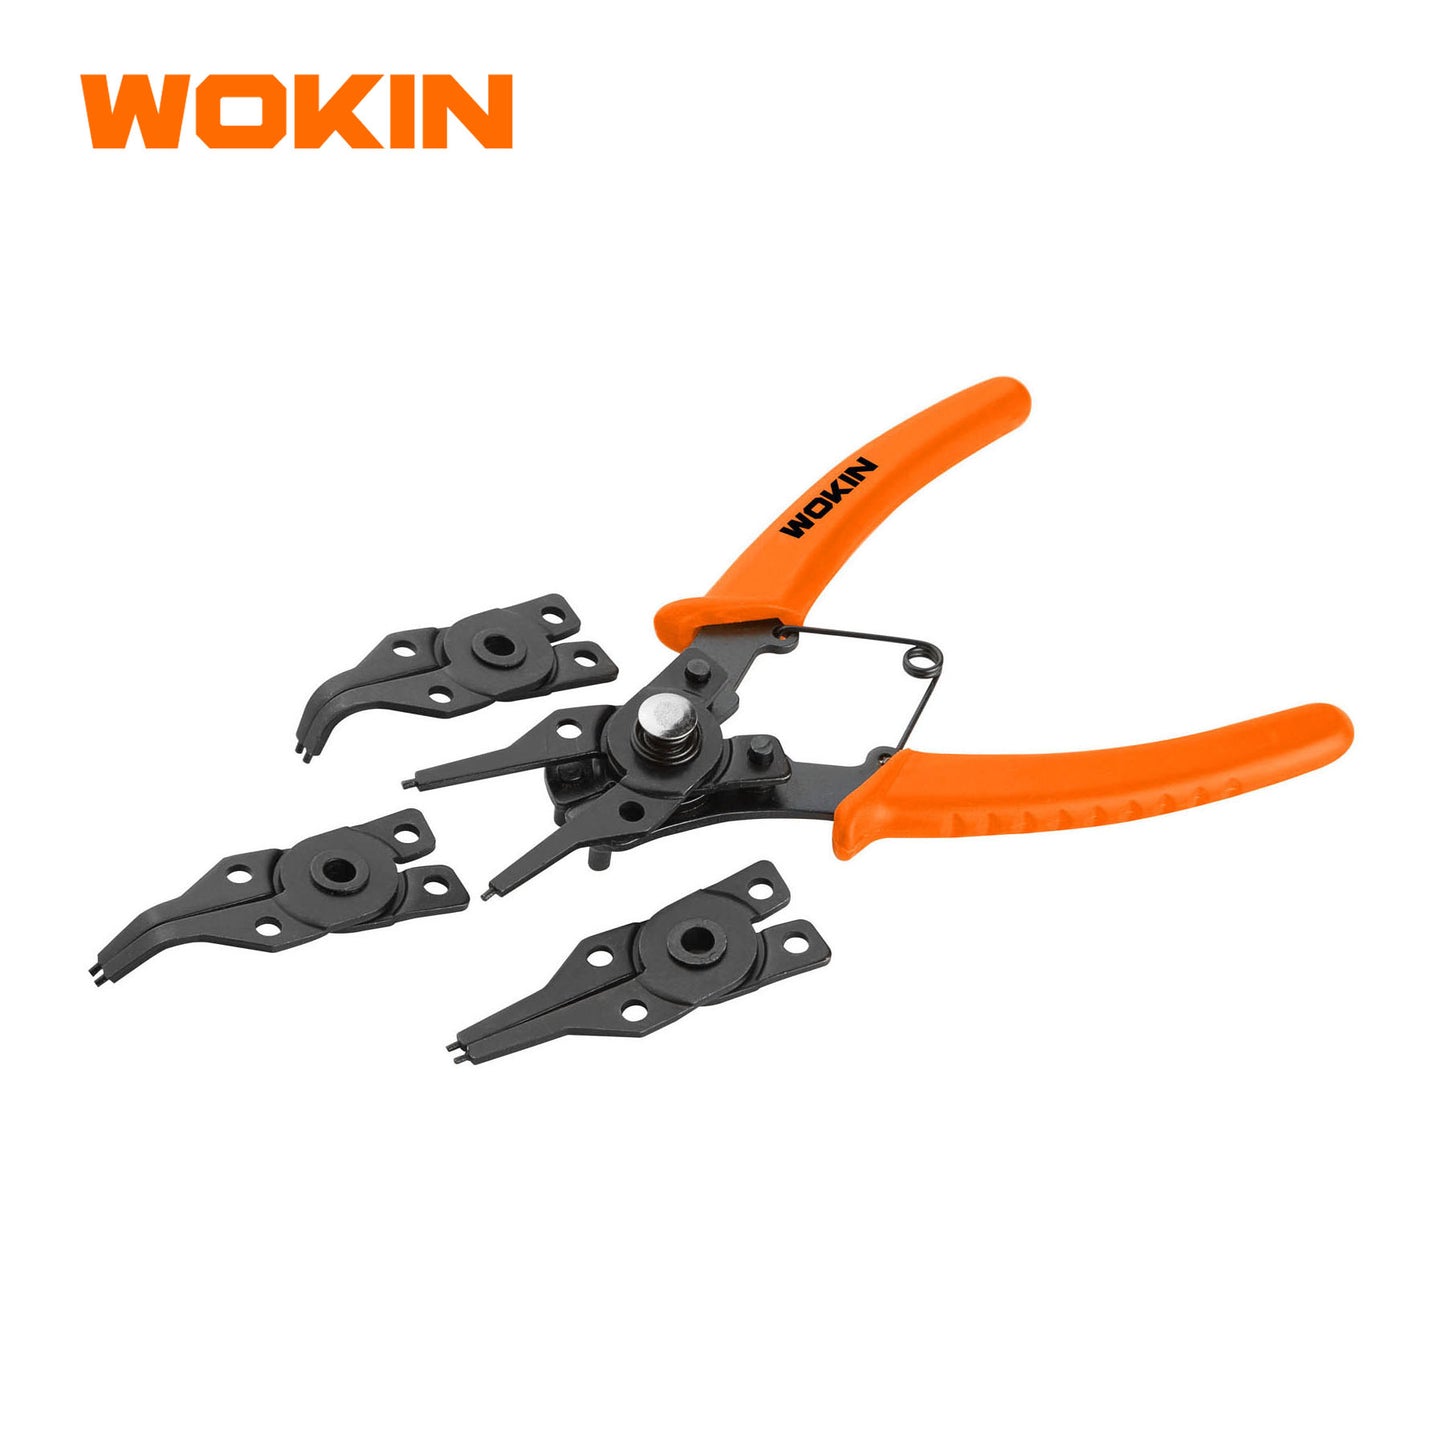 Wokin 6 Inch 4 n 1 Circlip Pliers Set